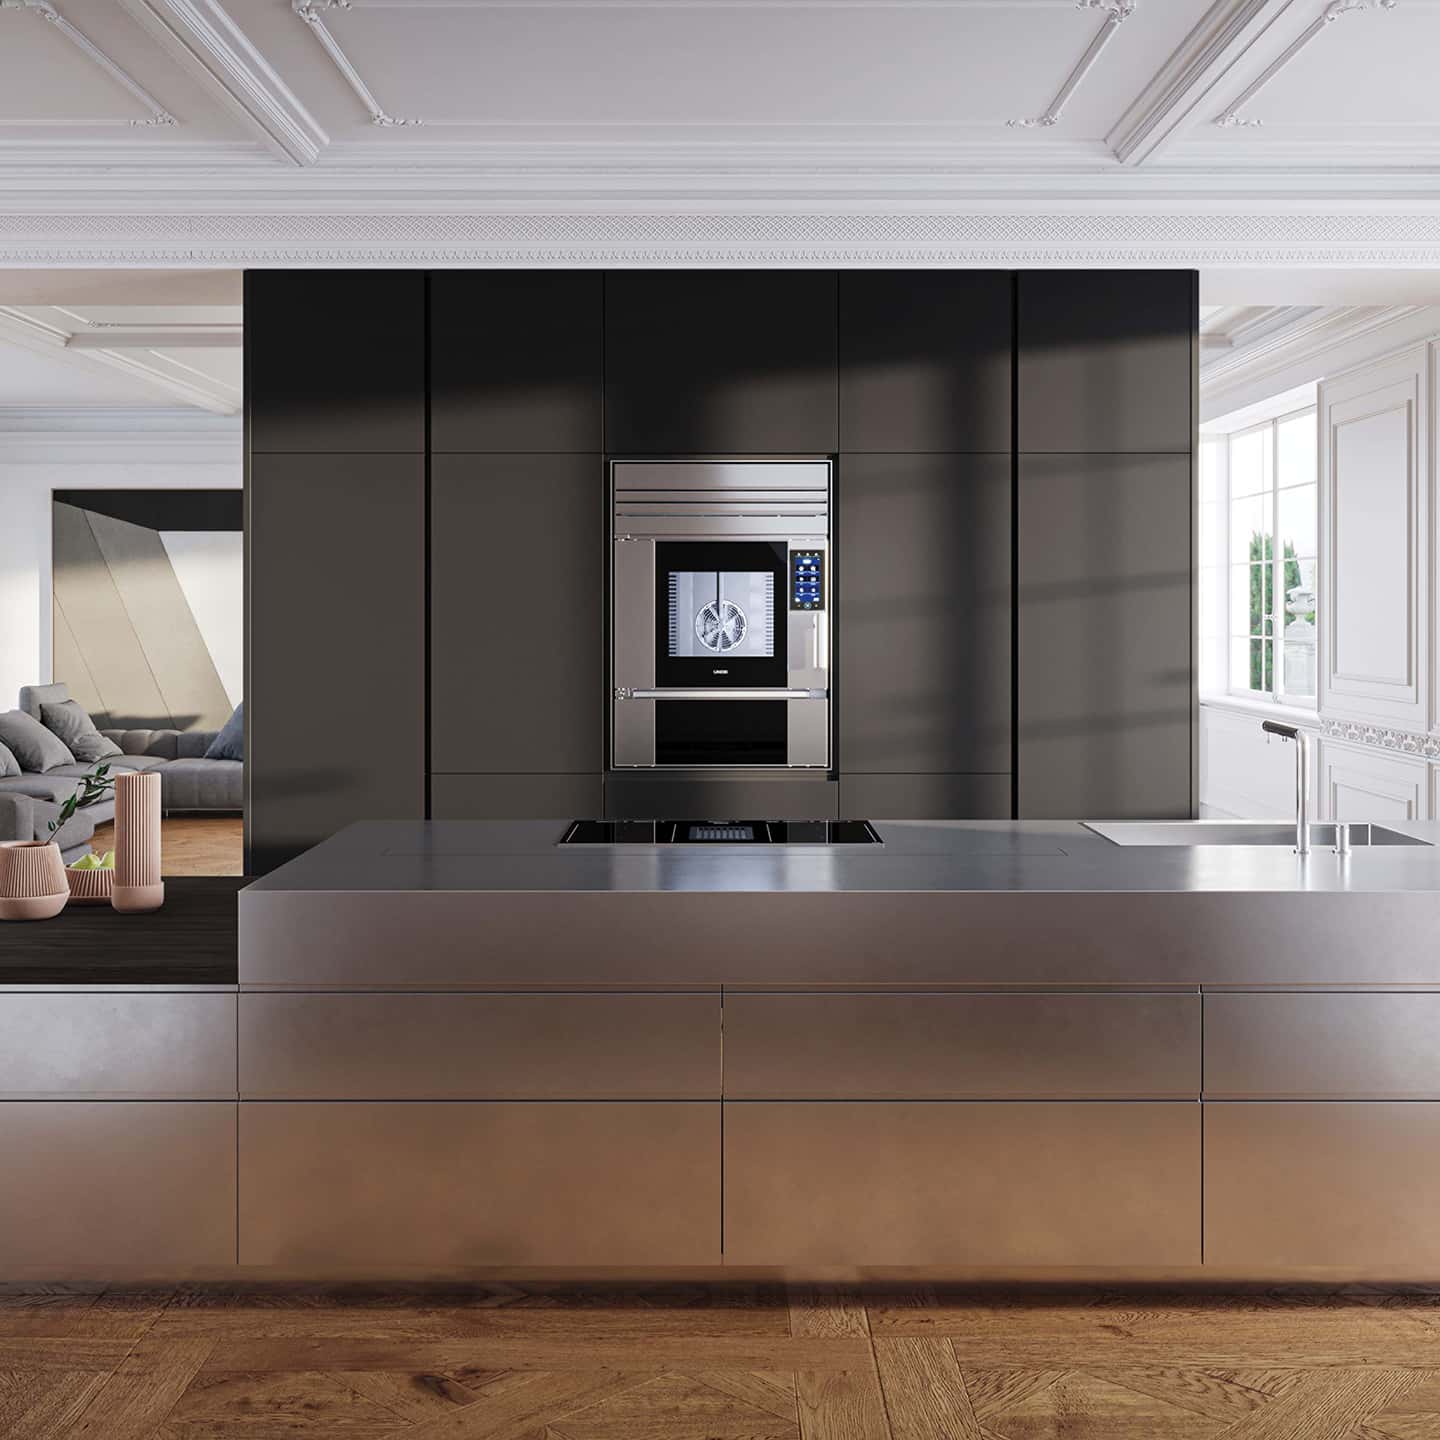  Cucina di lusso a Parigi con forno smart SuperOven Model 1S di Unox Casa